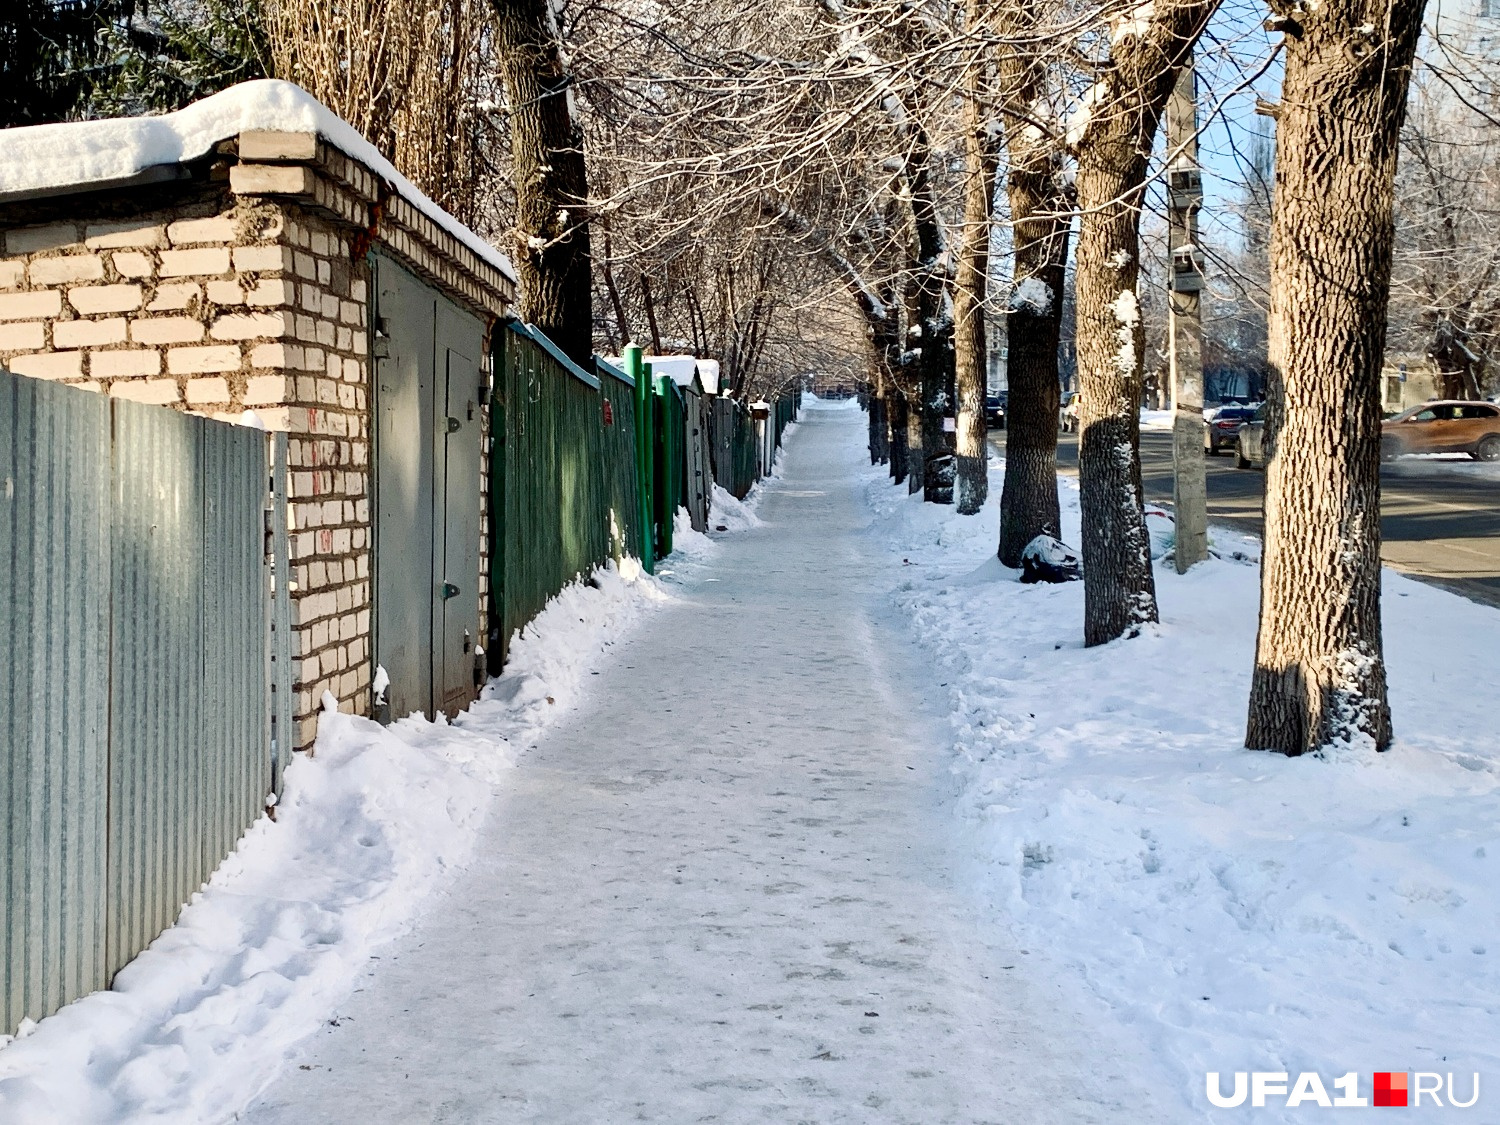 Улица Бессонова, подъем в сторону Комсомольской